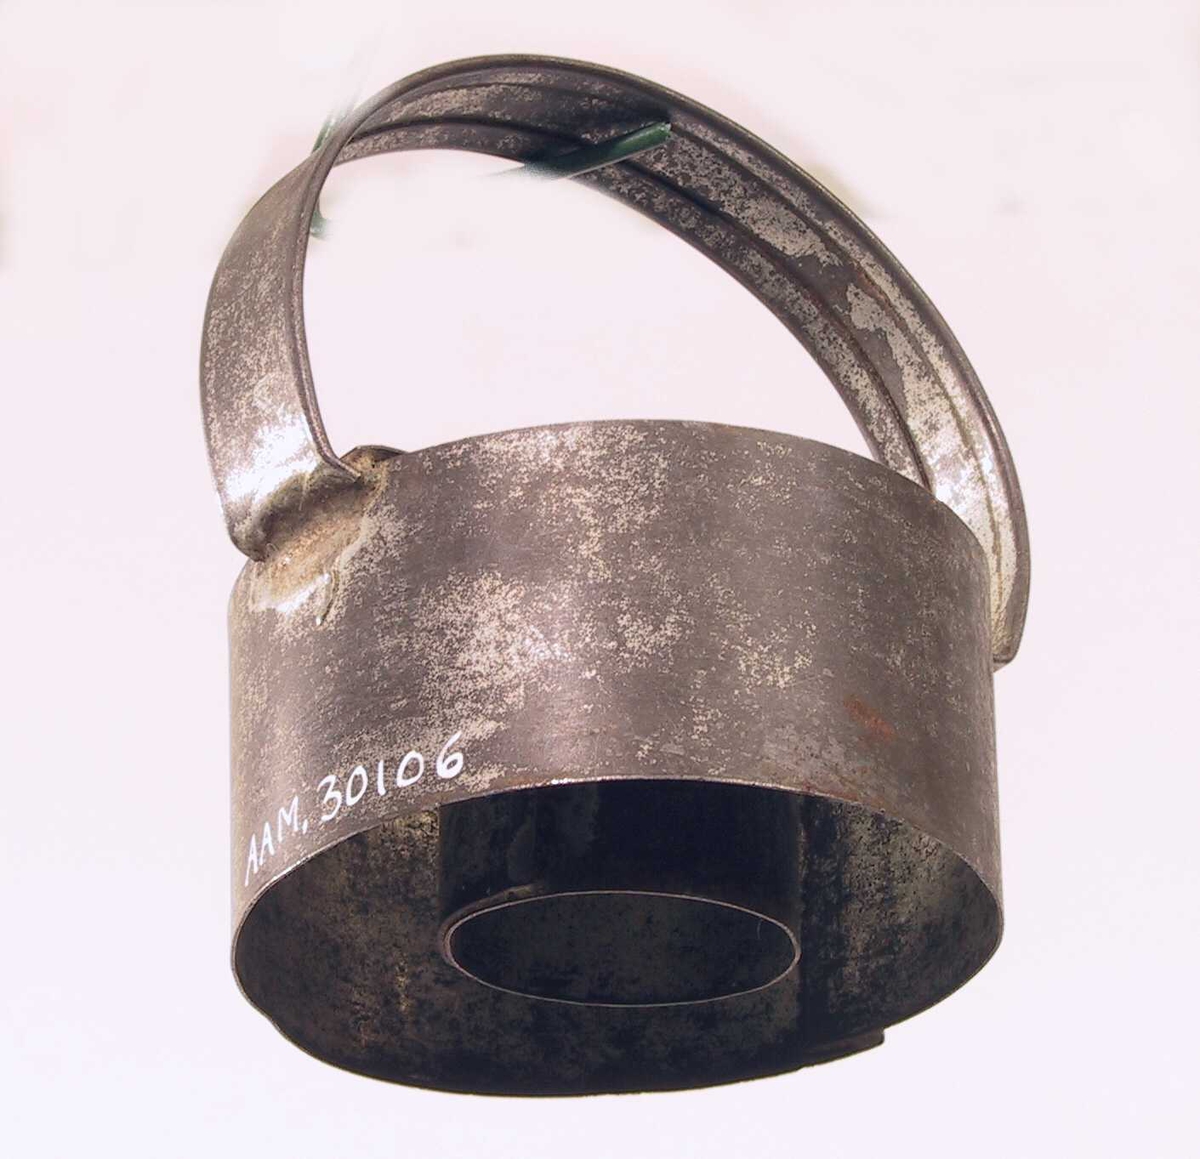 Liten sylinder av tynn jernplate med en større utenfor, festet sammen med et bånd av jern på tvers over begge og et håndtak festet ved hver ende av båndet. 
